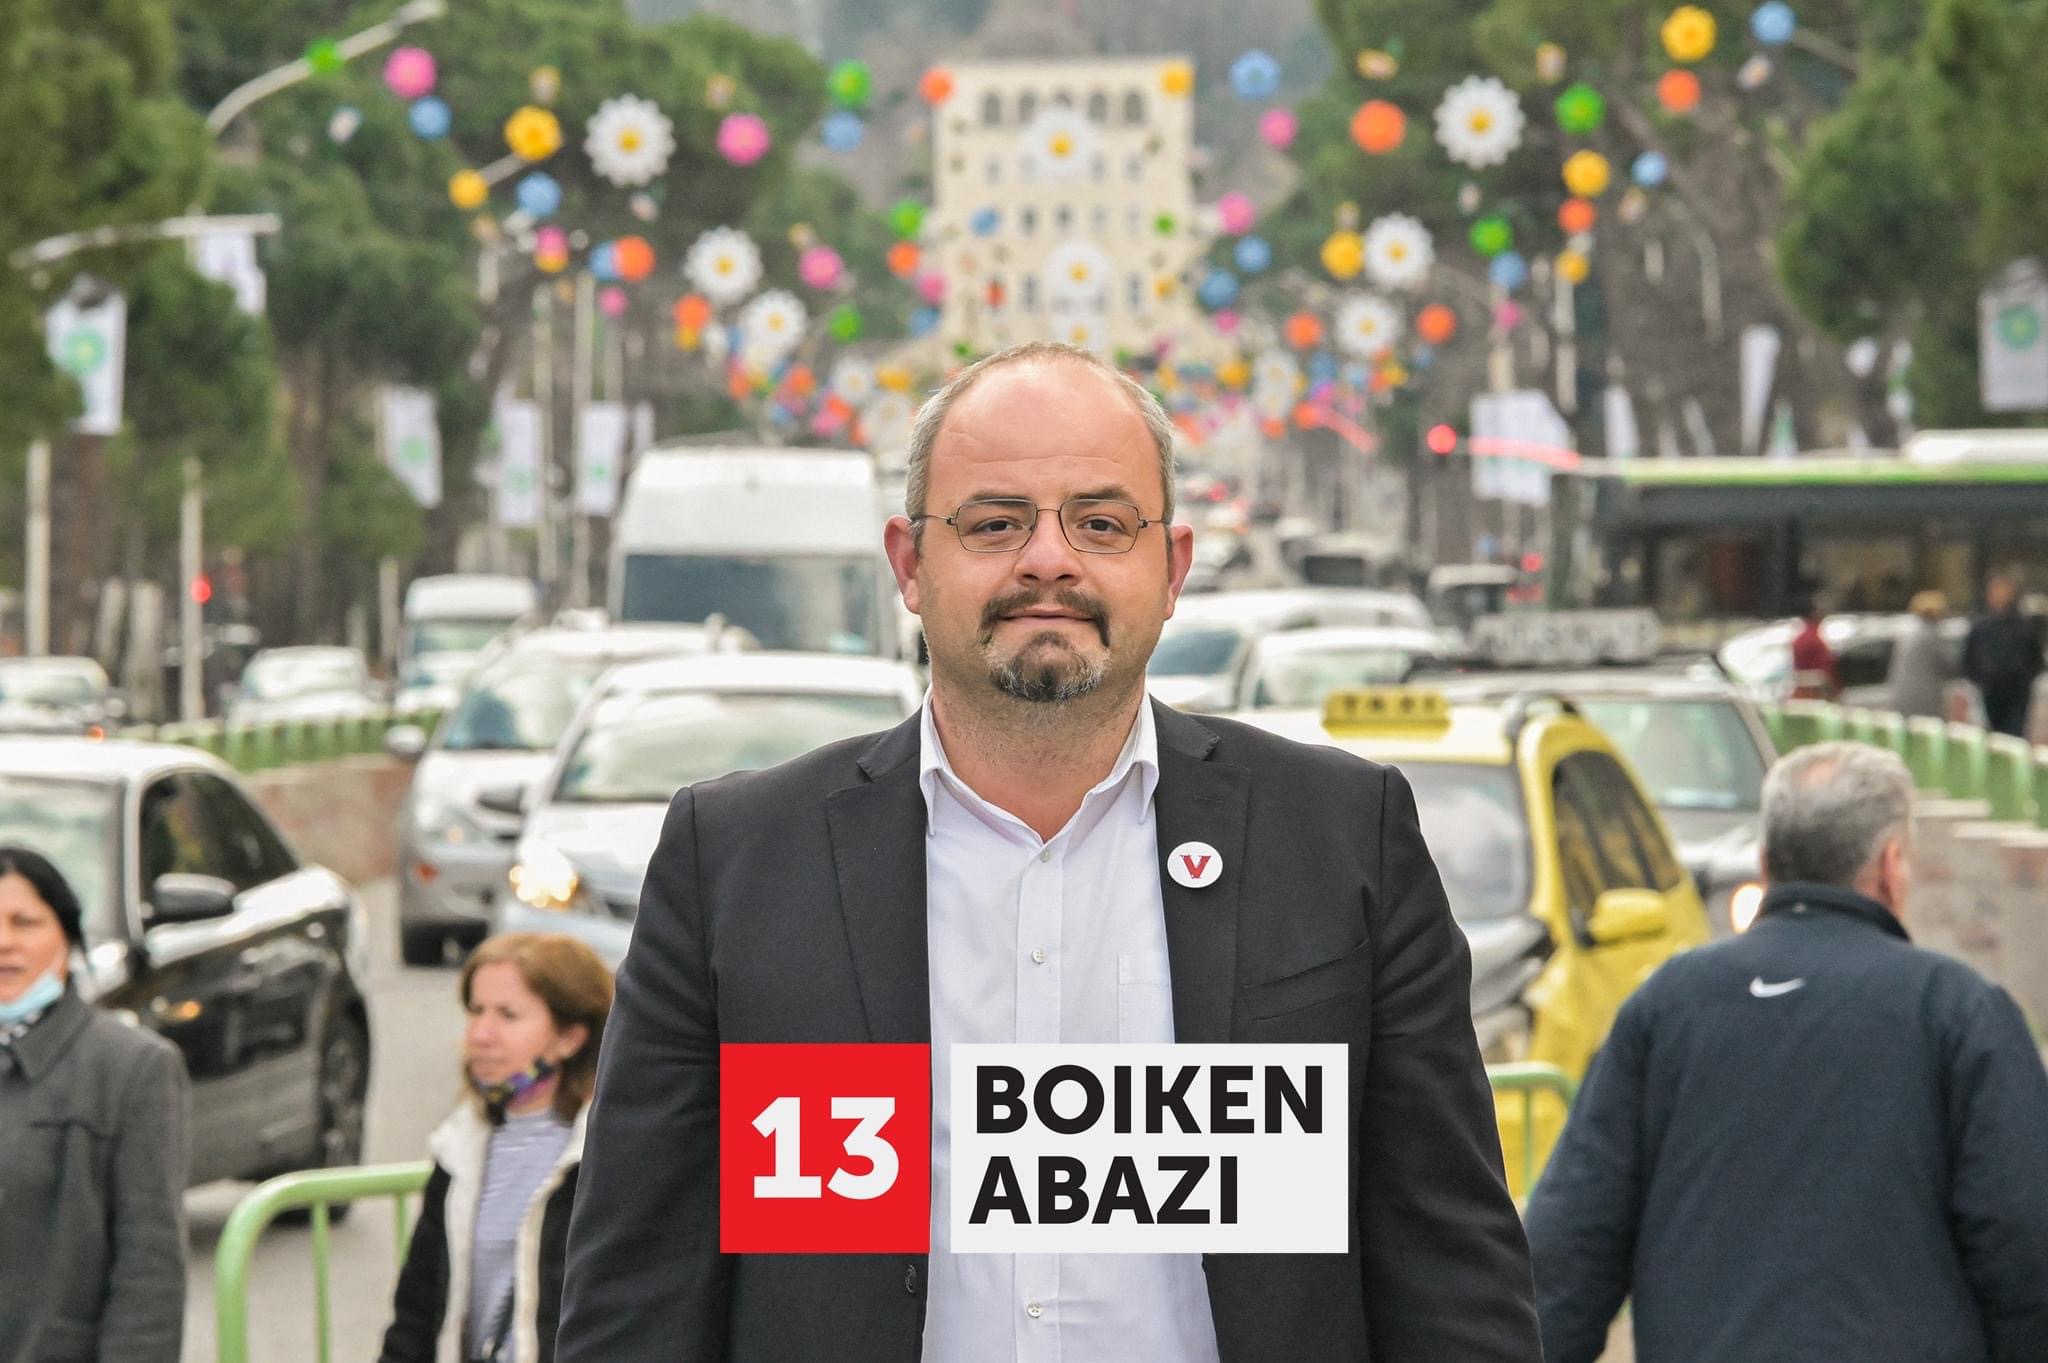 Albin Kurti mbështet kandidatin për deutet Bojken Abazi – NGO SHQIP